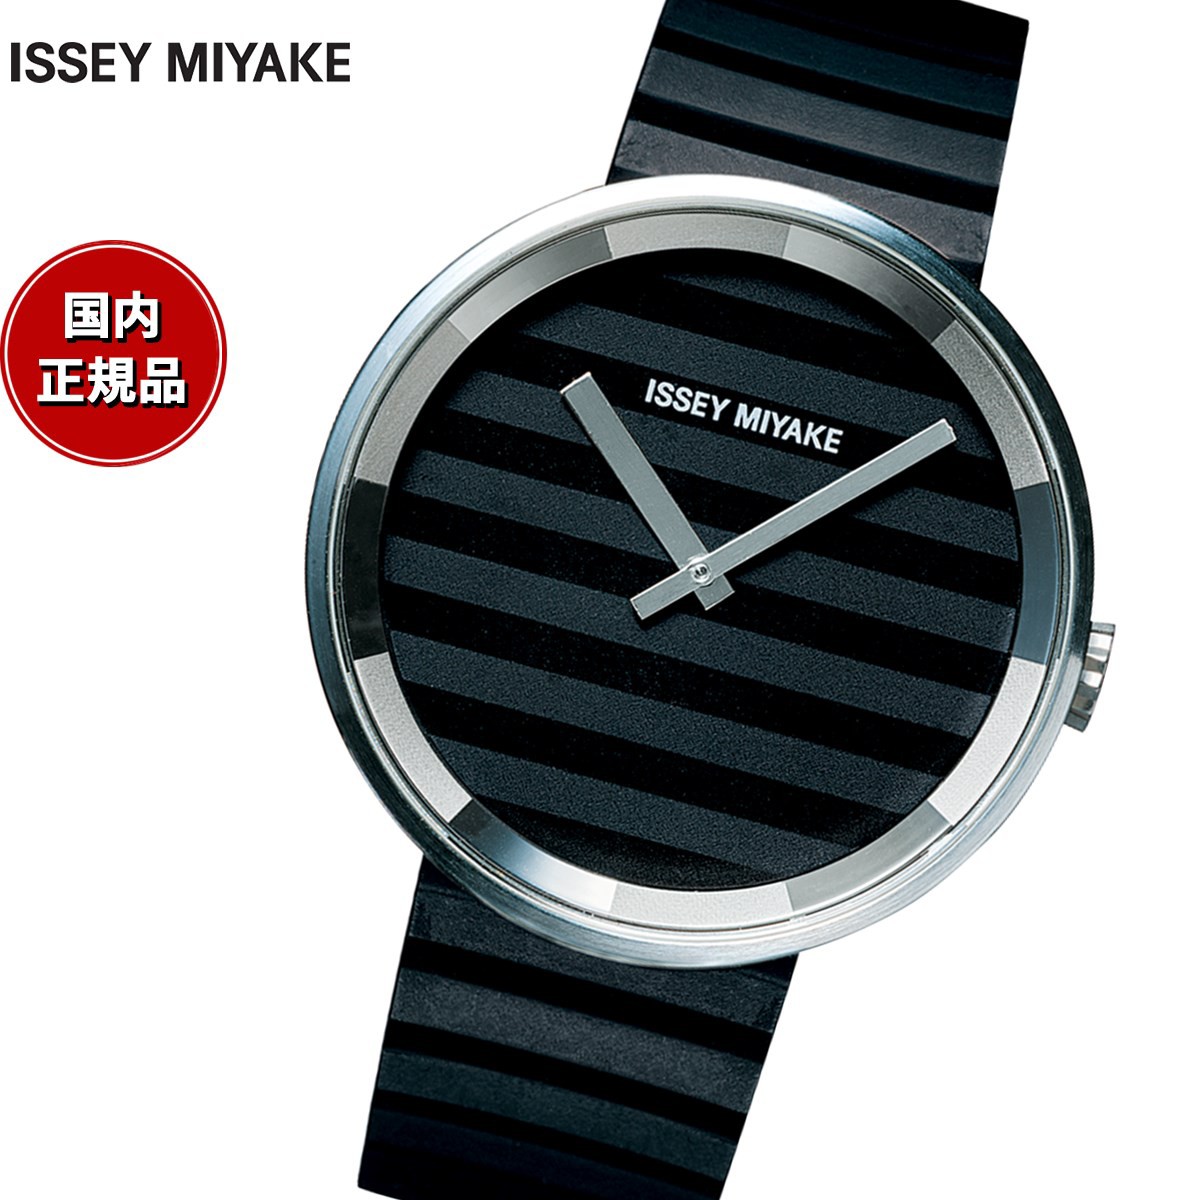 イッセイミヤケ ISSEY MIYAKE 腕時計 メンズ PLEASE Jasper Morrison デザイン SILAAA01